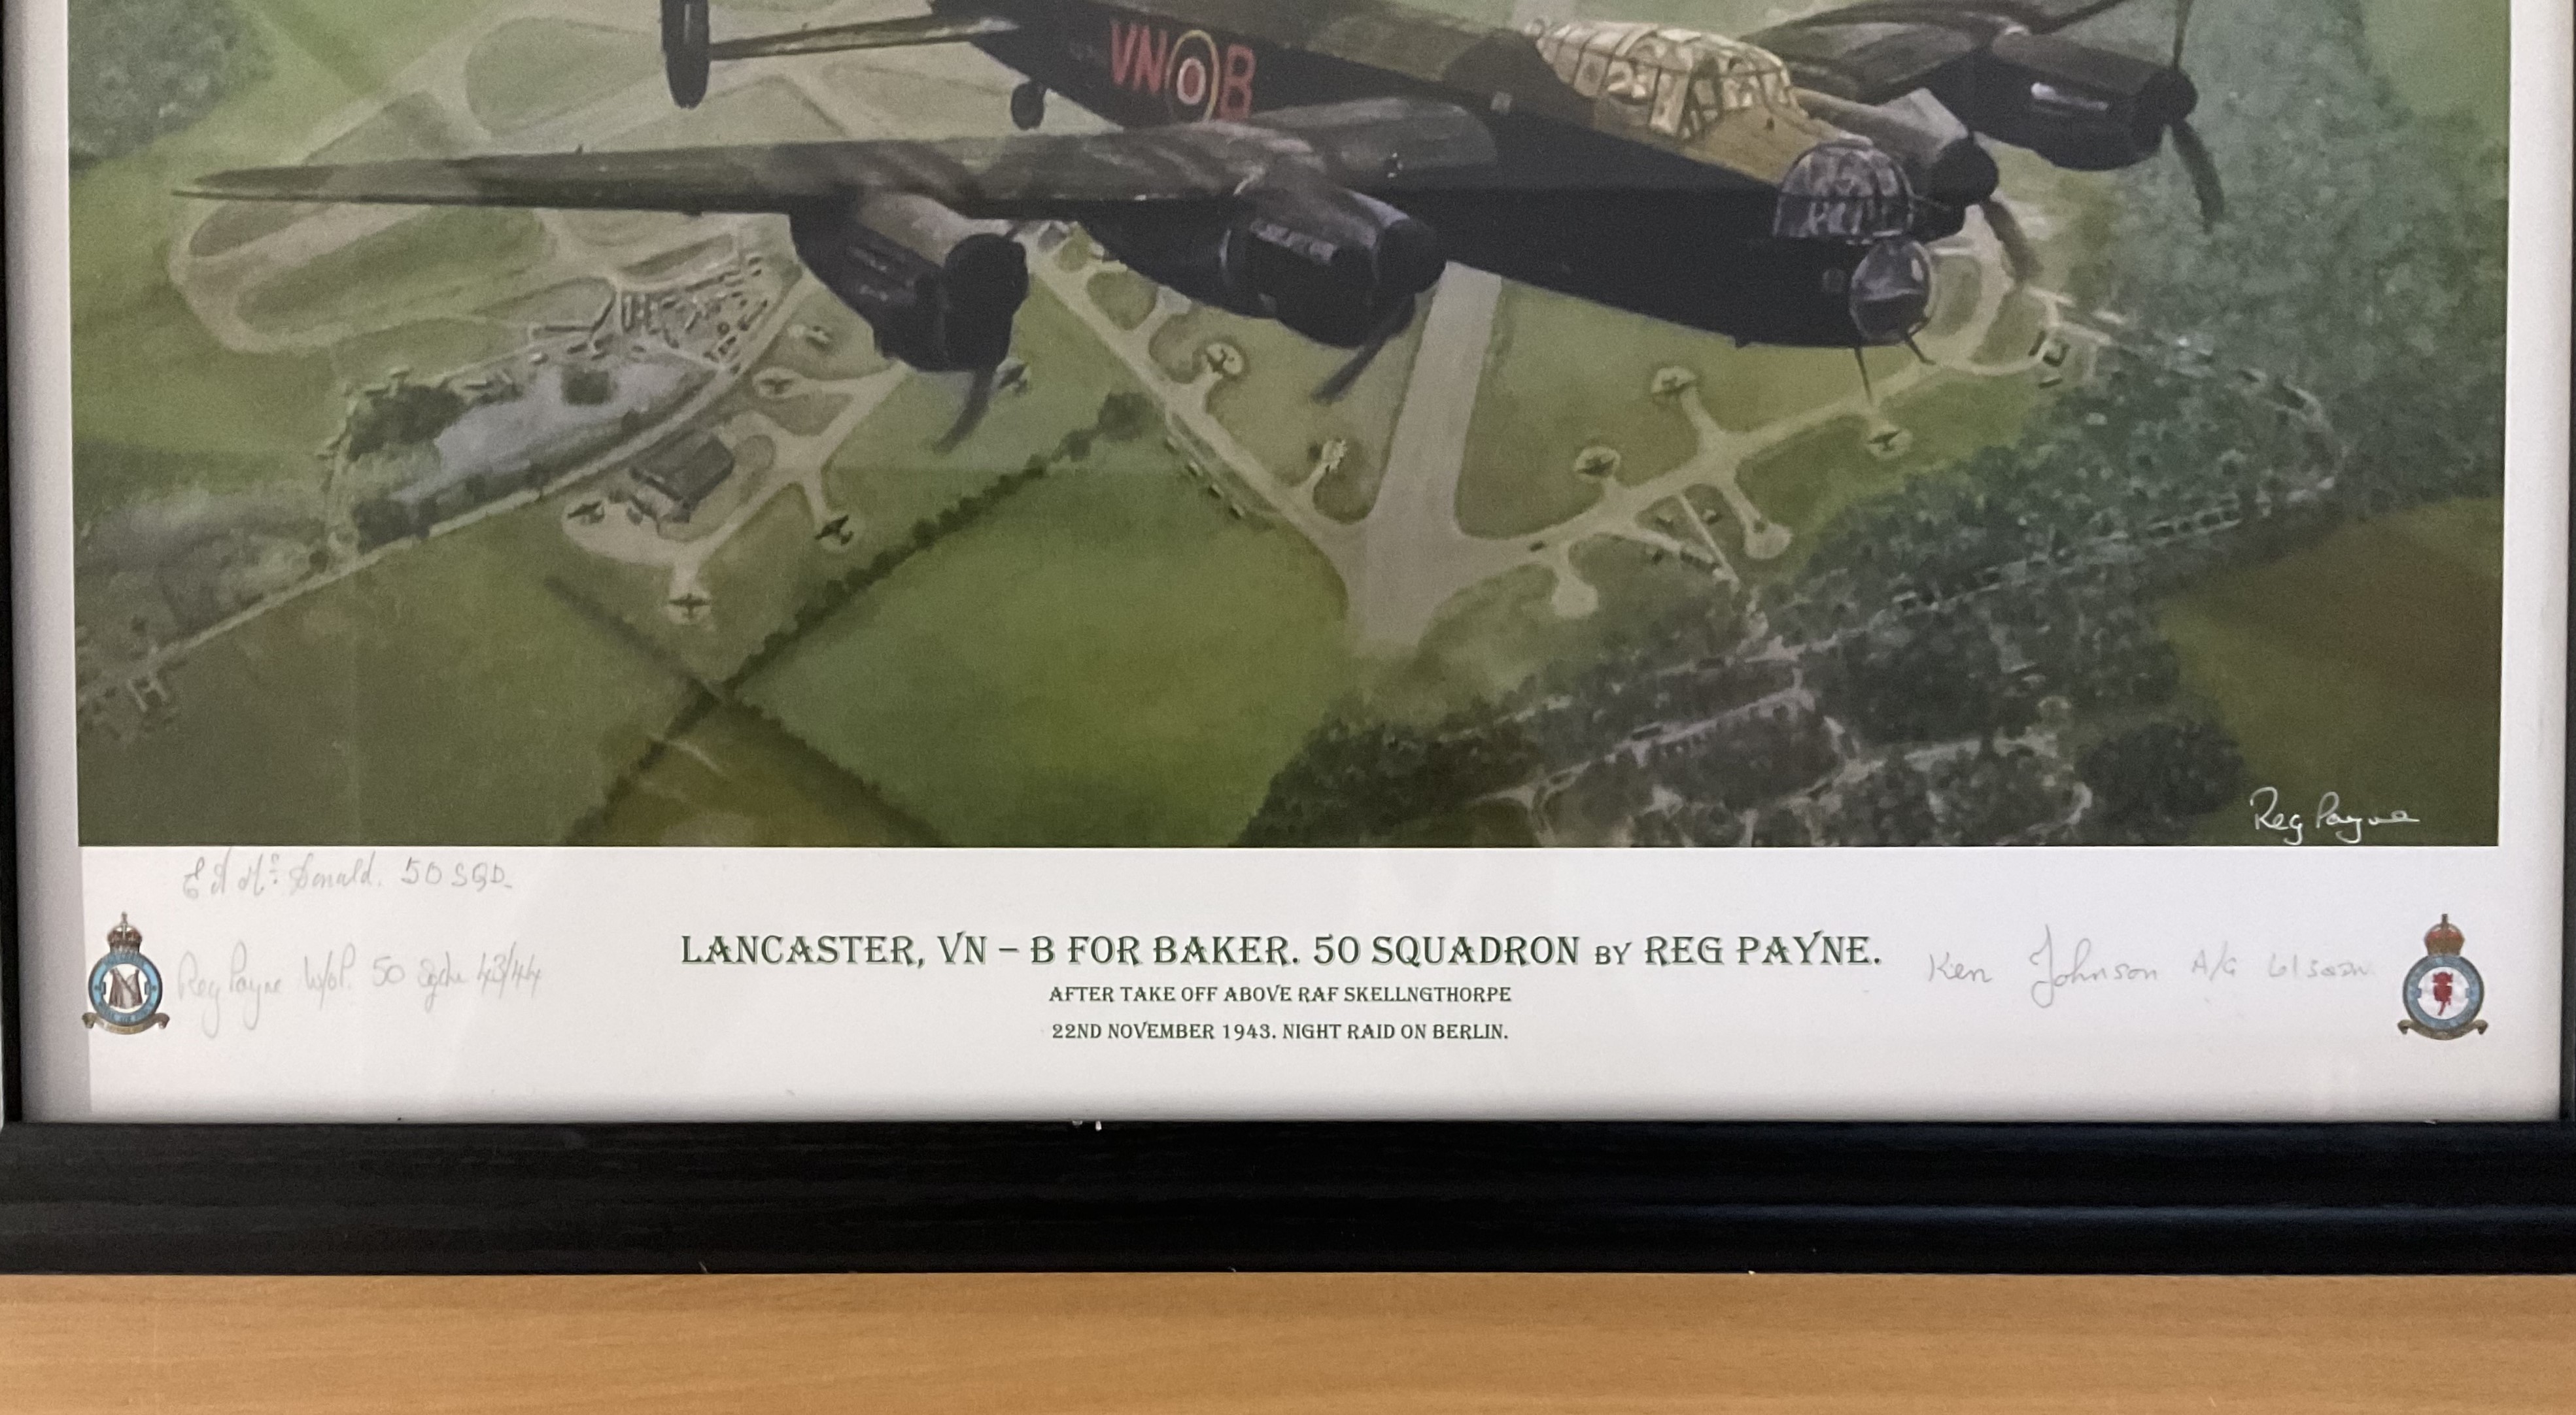 Lancaster V-N B For Baker. 50 Squadron (After take-off above RAF Skellngthorpe 22nd November 1943. - Image 2 of 2